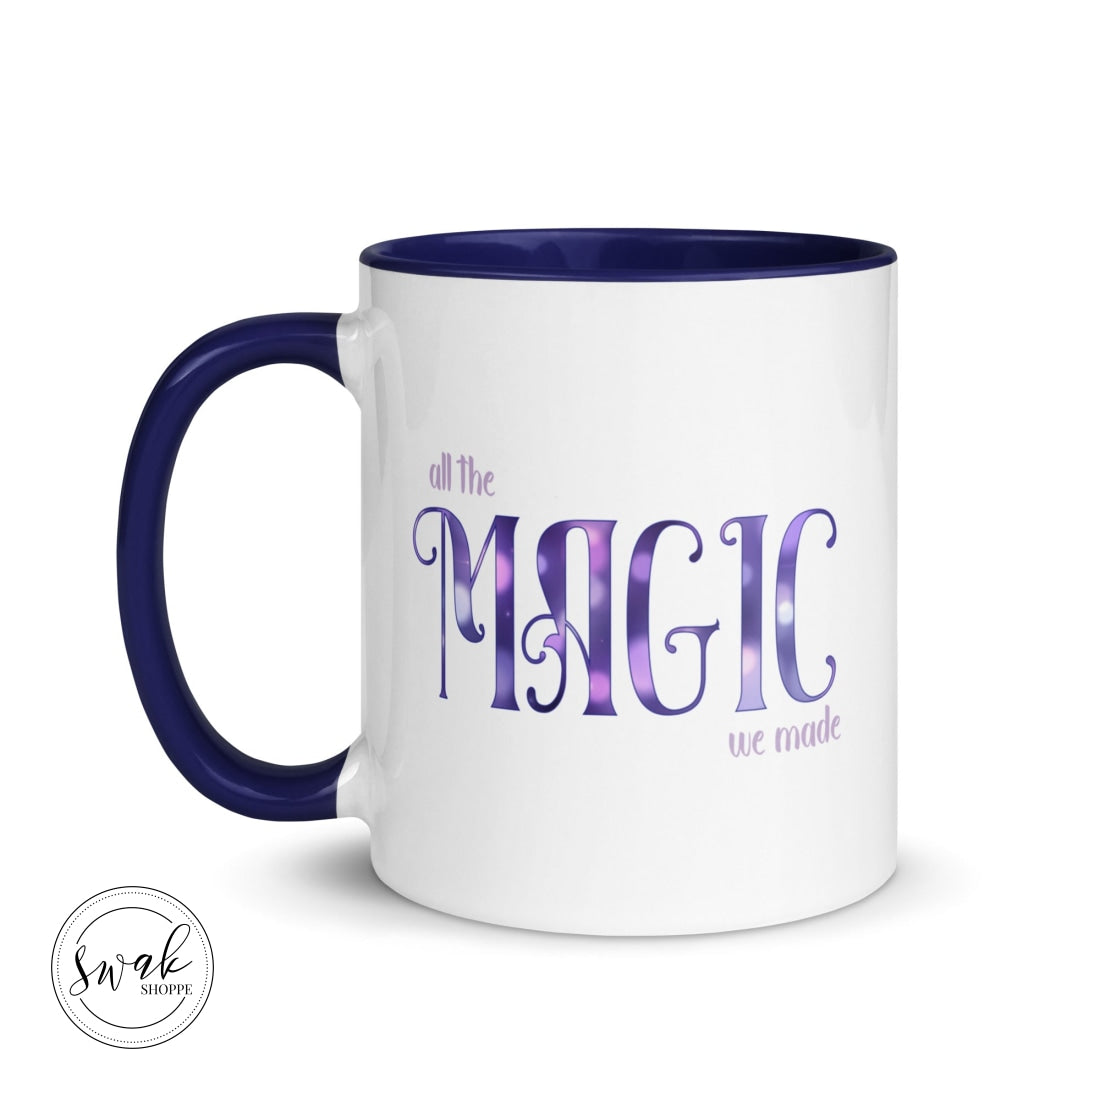 All The Magic We Made Mug Mugs